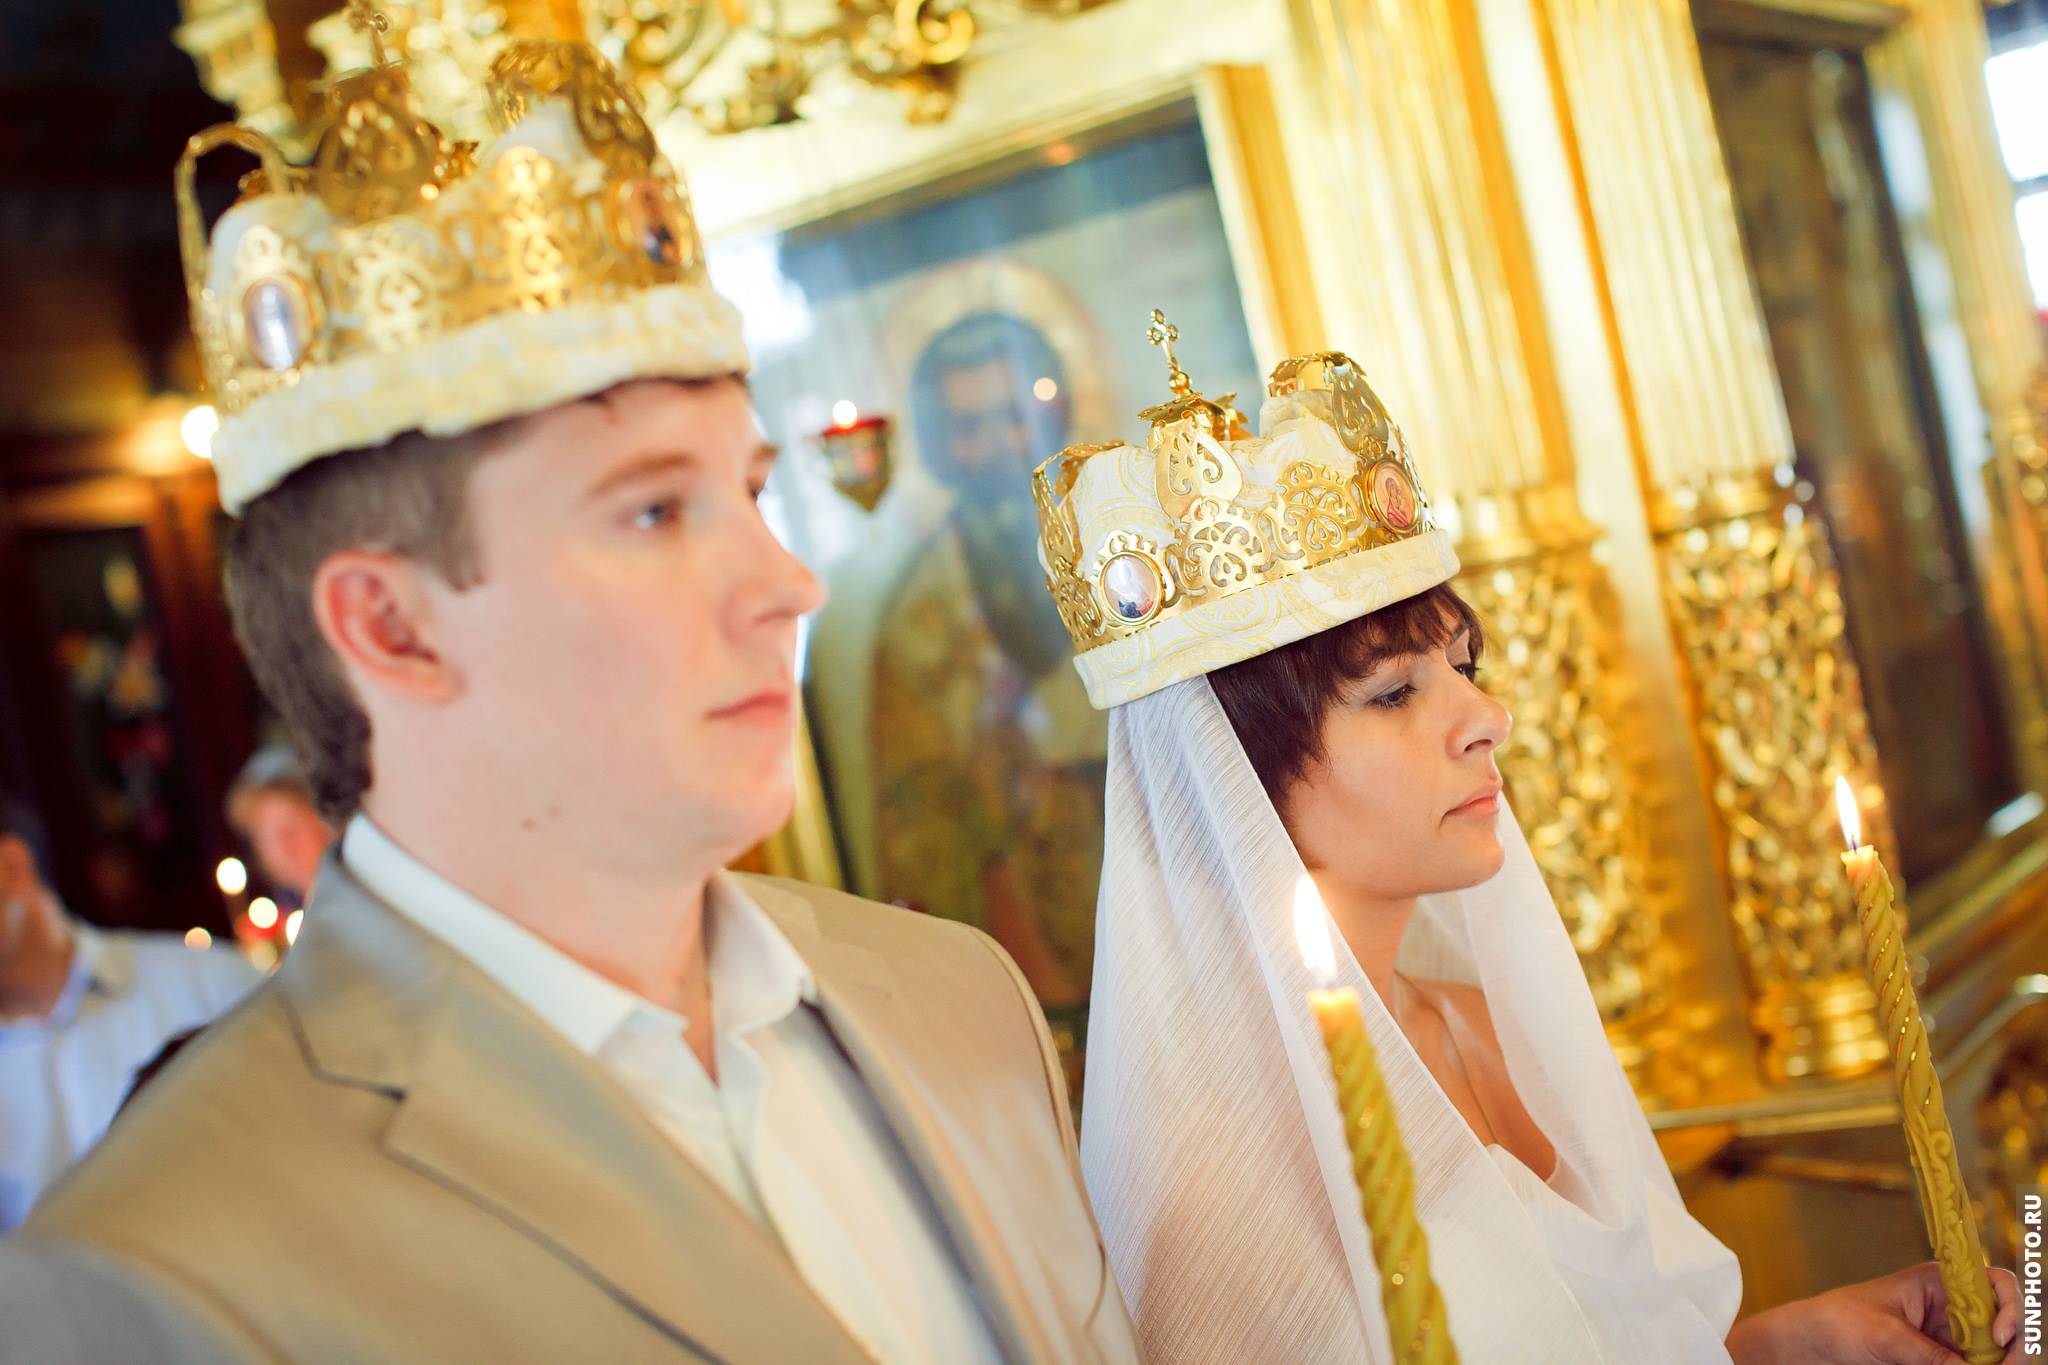 Как подготовиться к обряду венчания в православной церкви – правила венчания и значение события для пары